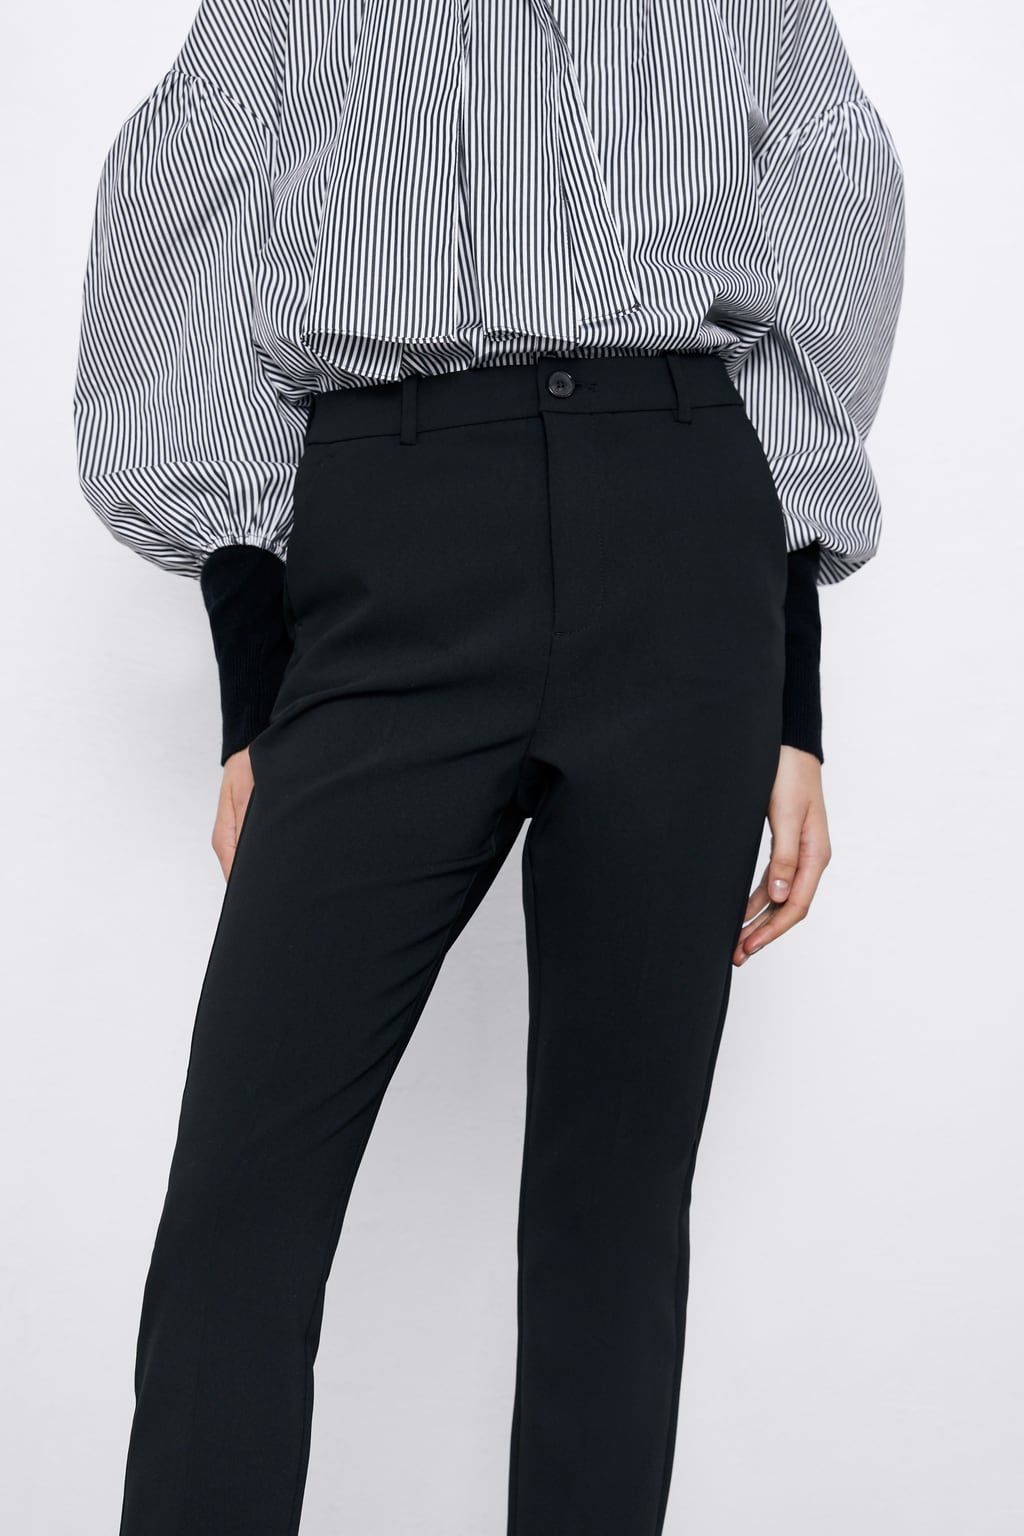 En Zara crean el pantalón de vestir negro que reduce una talla